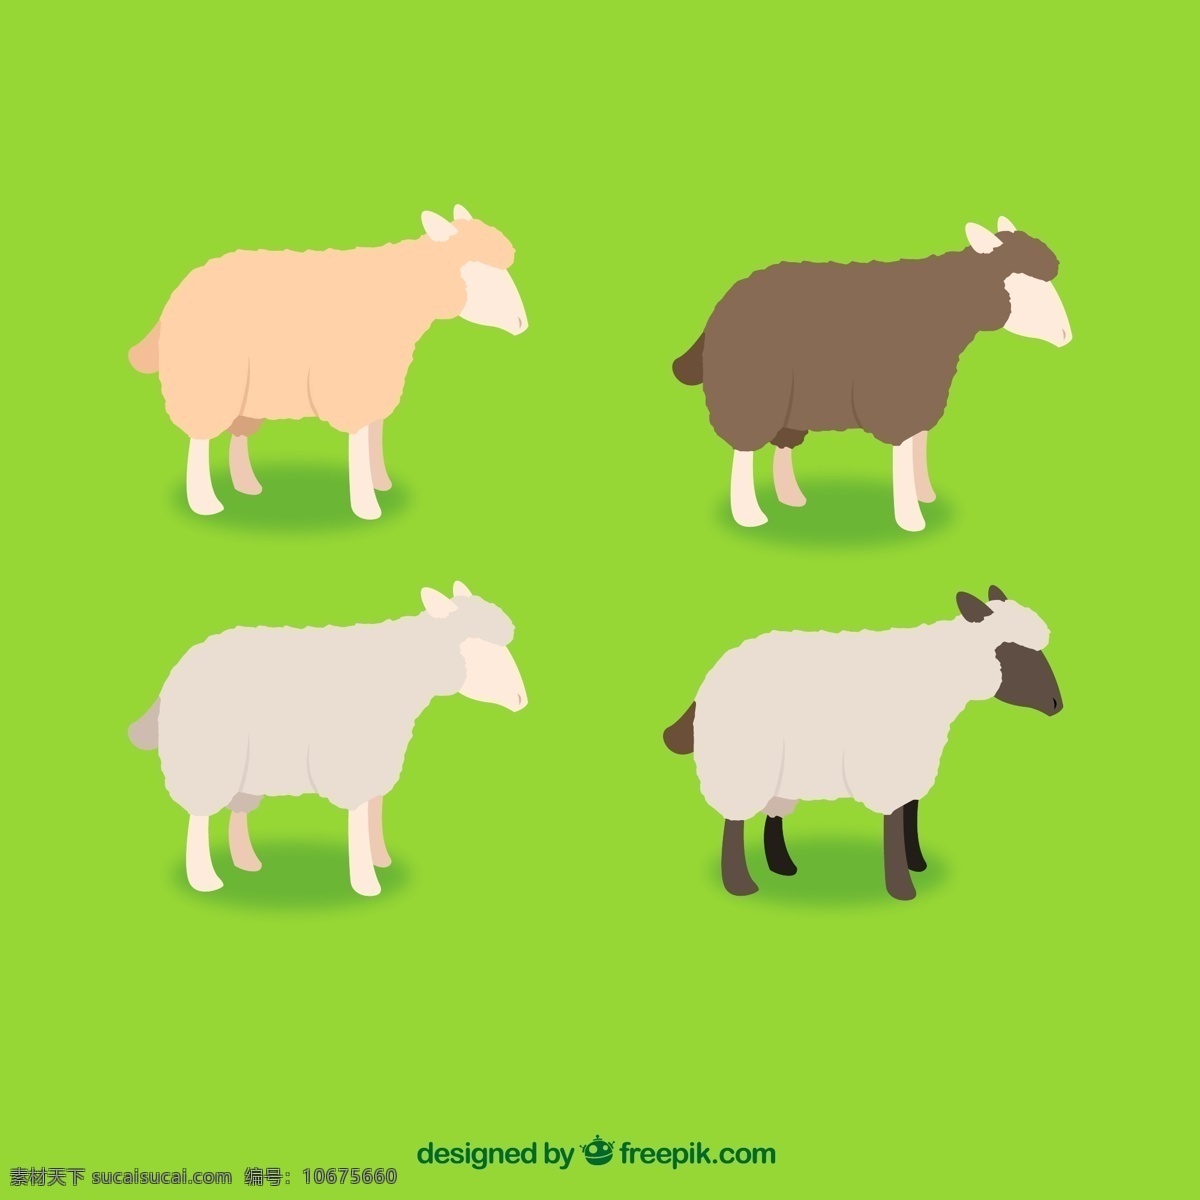 卡通绵羊矢量 农场 卡通 家畜 绵羊 羊 矢量图 ai格式 生物世界 家禽家畜